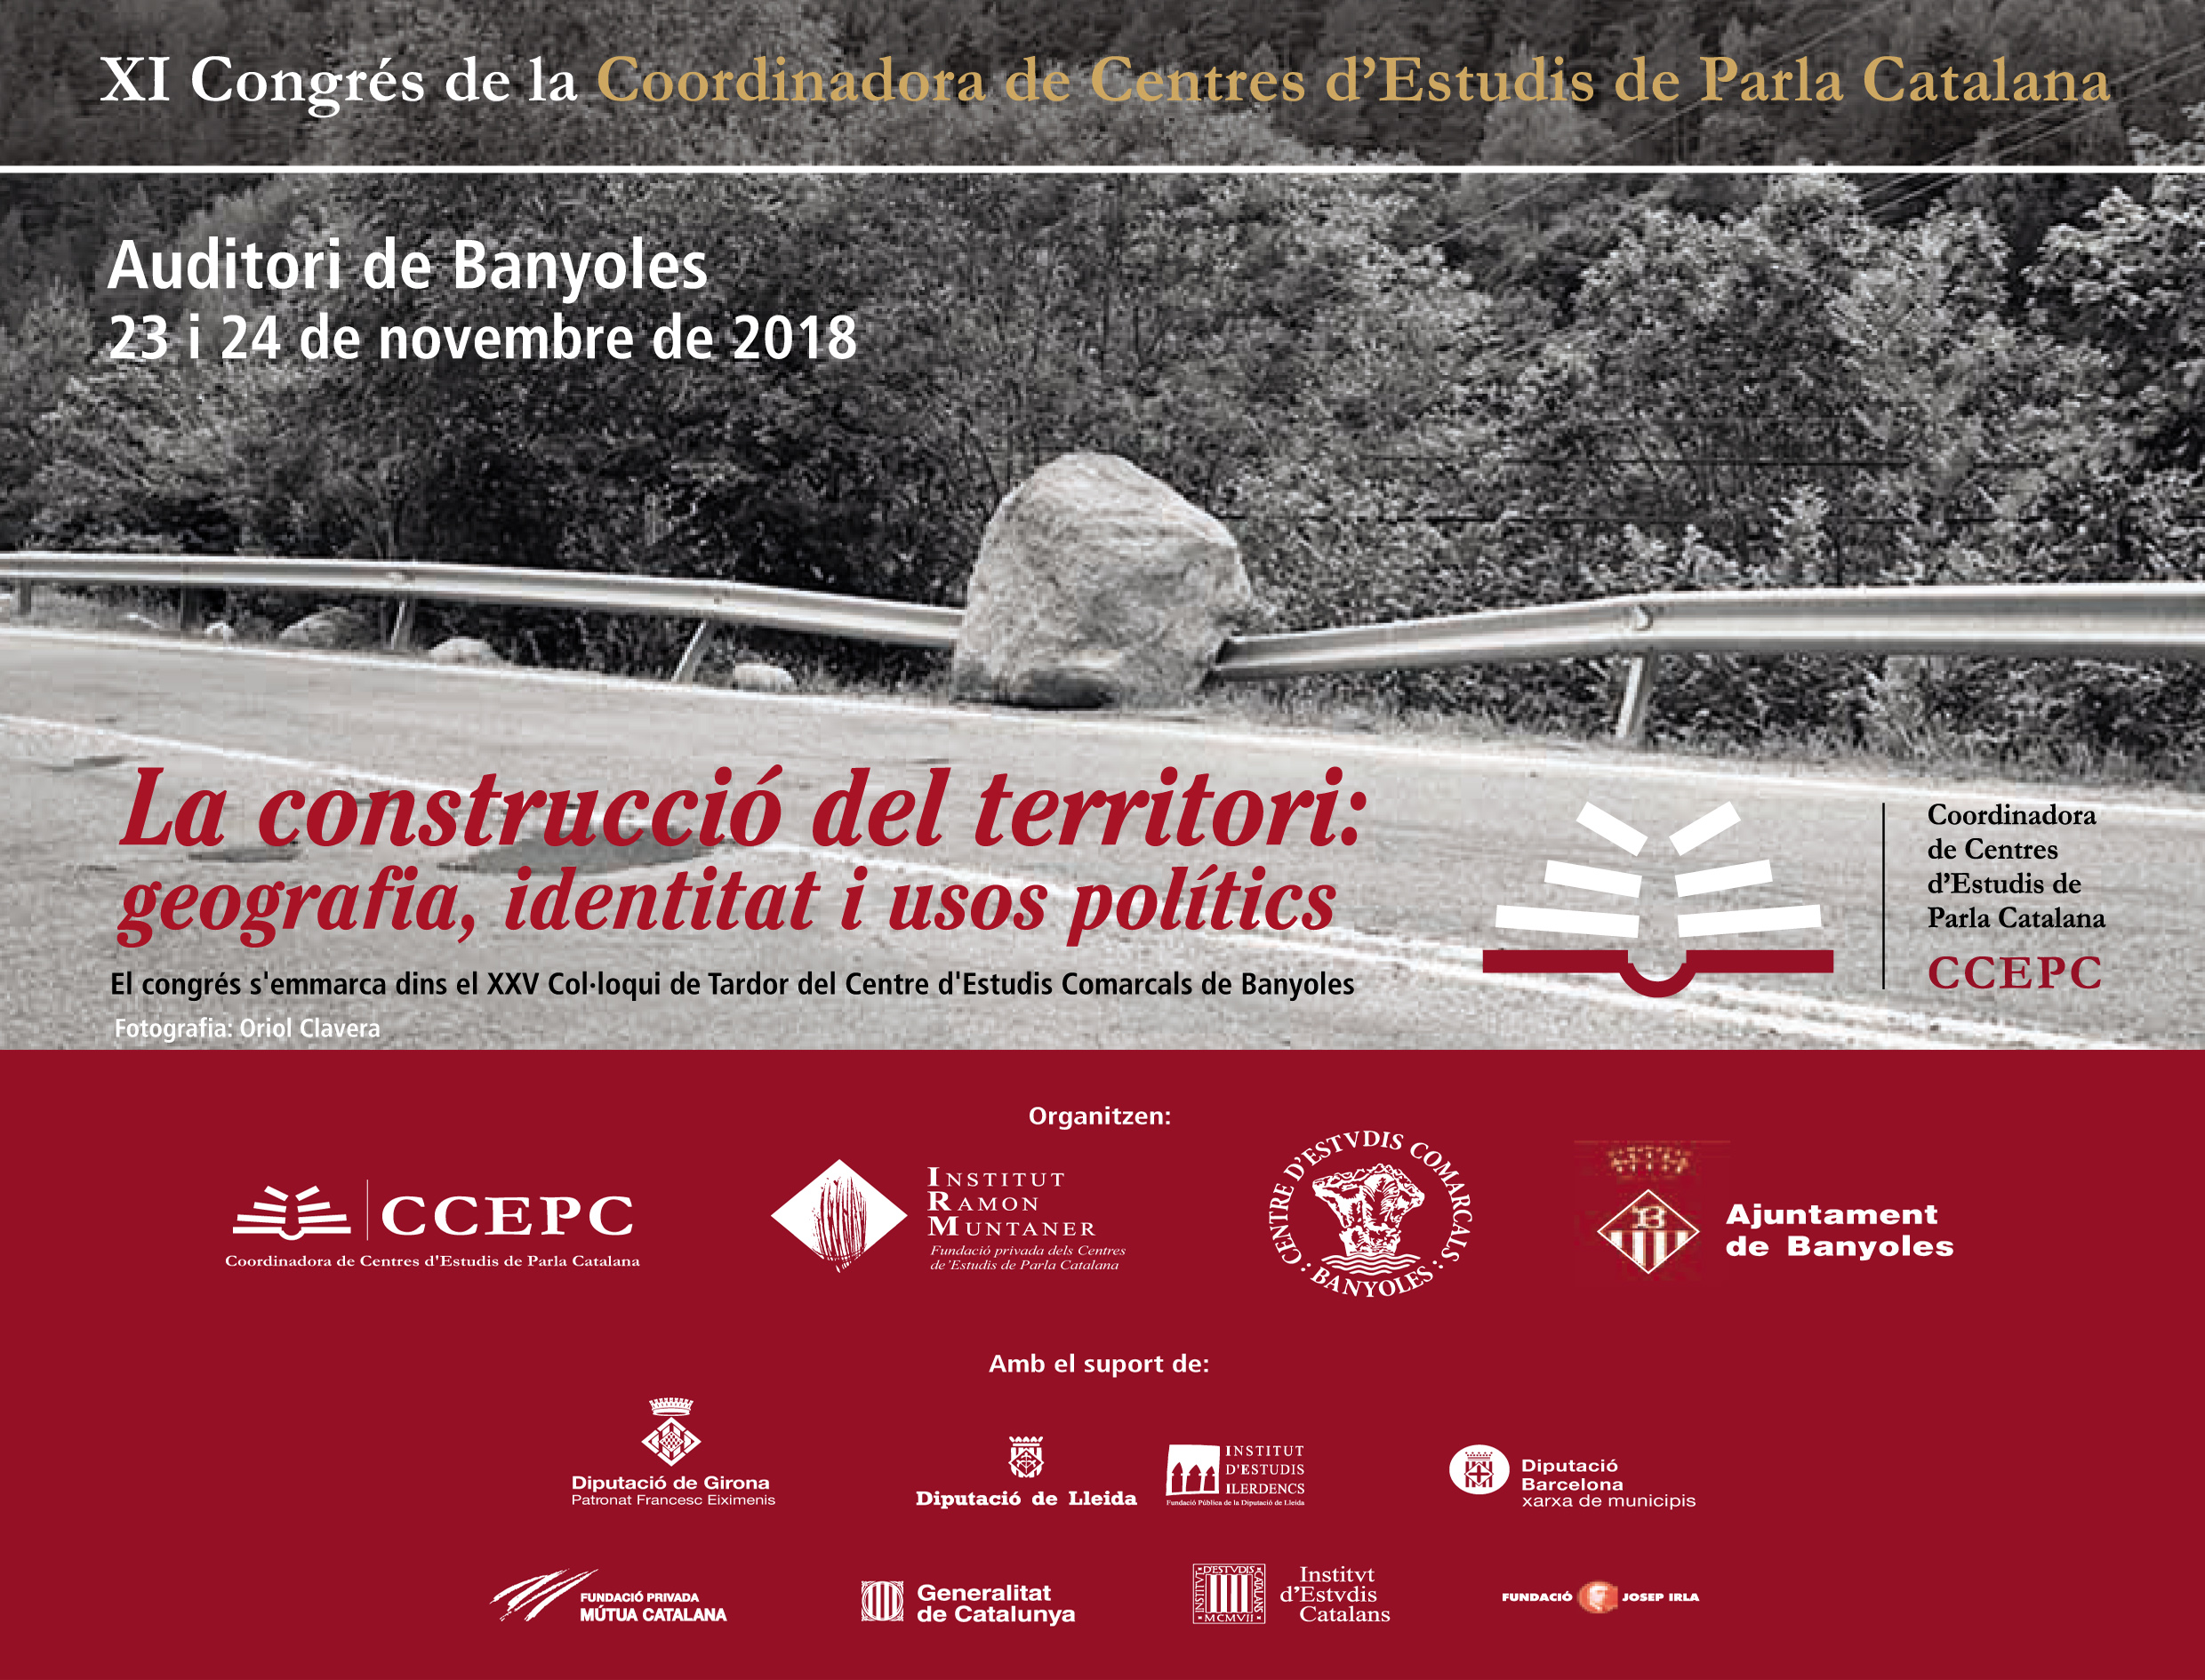 Obertes les inscripcions per a l’XI Congrés de la Coordinadora de Centres d’Estudis de Parla Catalana